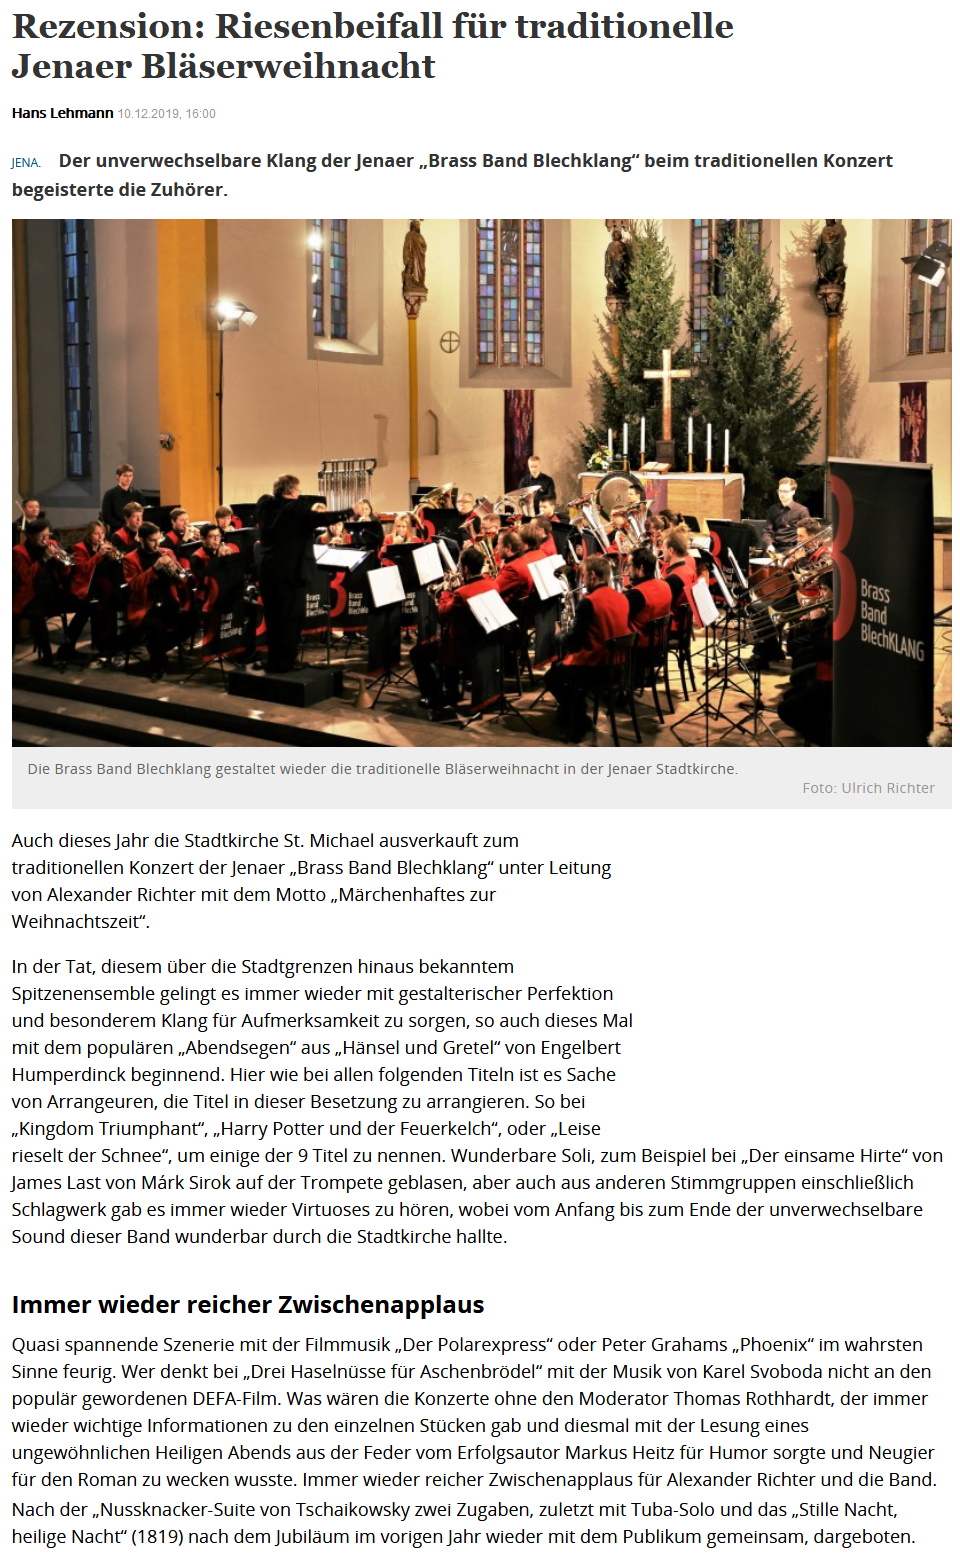 Artikel TLZ Rezension Großes Weihnachtskonzert Brass Band BlechKLANG